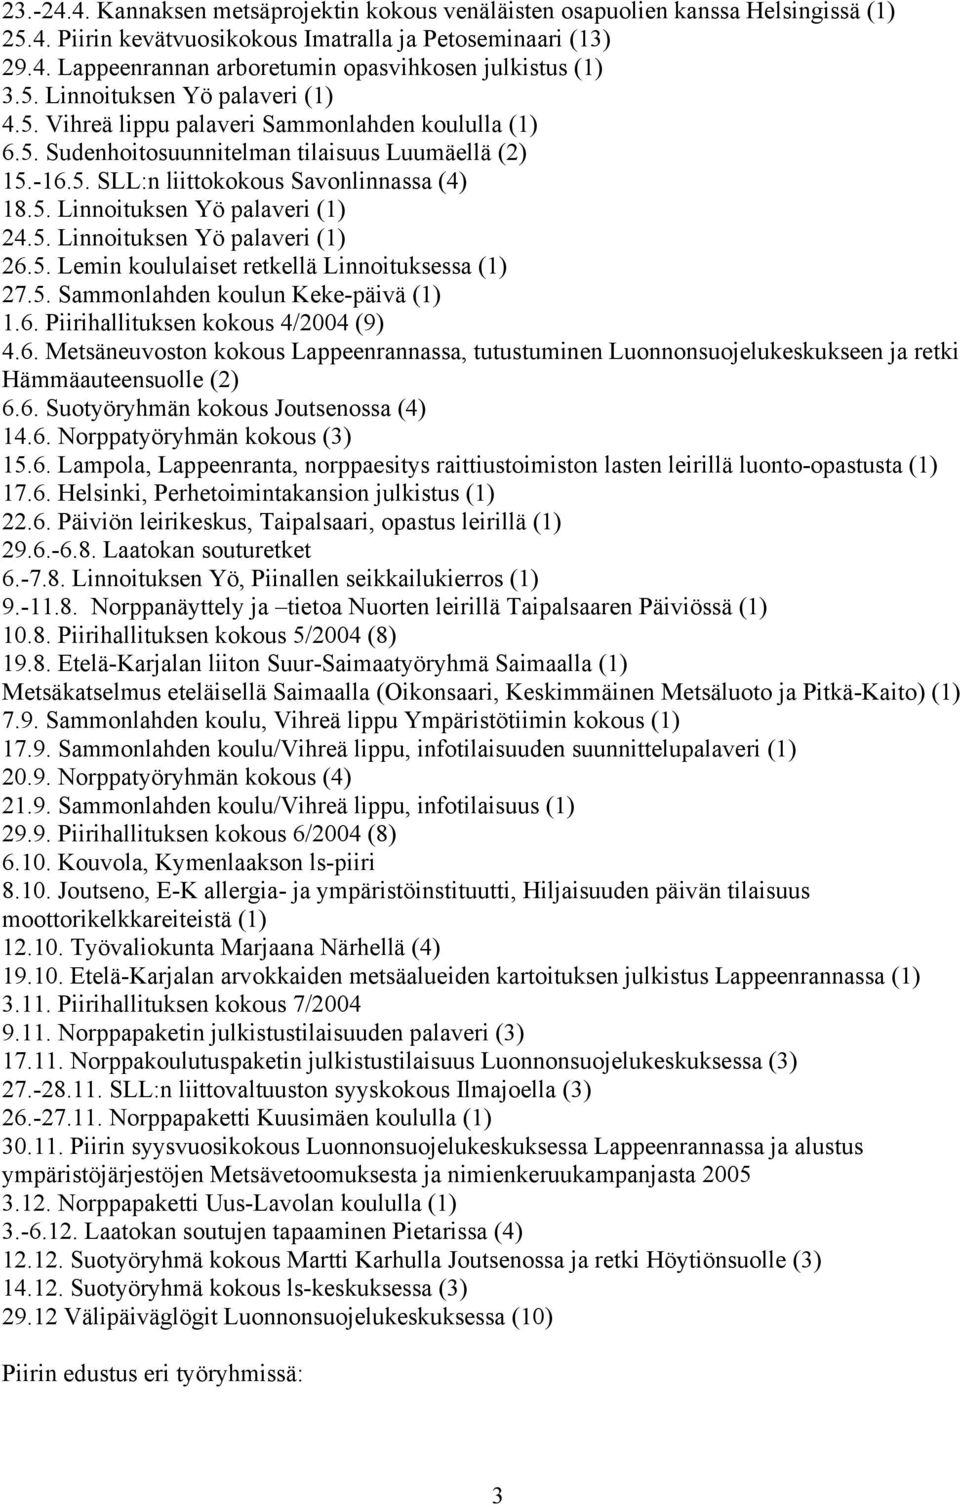 5. Linnoituksen Yö palaveri (1) 26.5. Lemin koululaiset retkellä Linnoituksessa (1) 27.5. Sammonlahden koulun Keke-päivä (1) 1.6. Piirihallituksen kokous 4/2004 (9) 4.6. Metsäneuvoston kokous Lappeenrannassa, tutustuminen Luonnonsuojelukeskukseen ja retki Hämmäauteensuolle (2) 6.